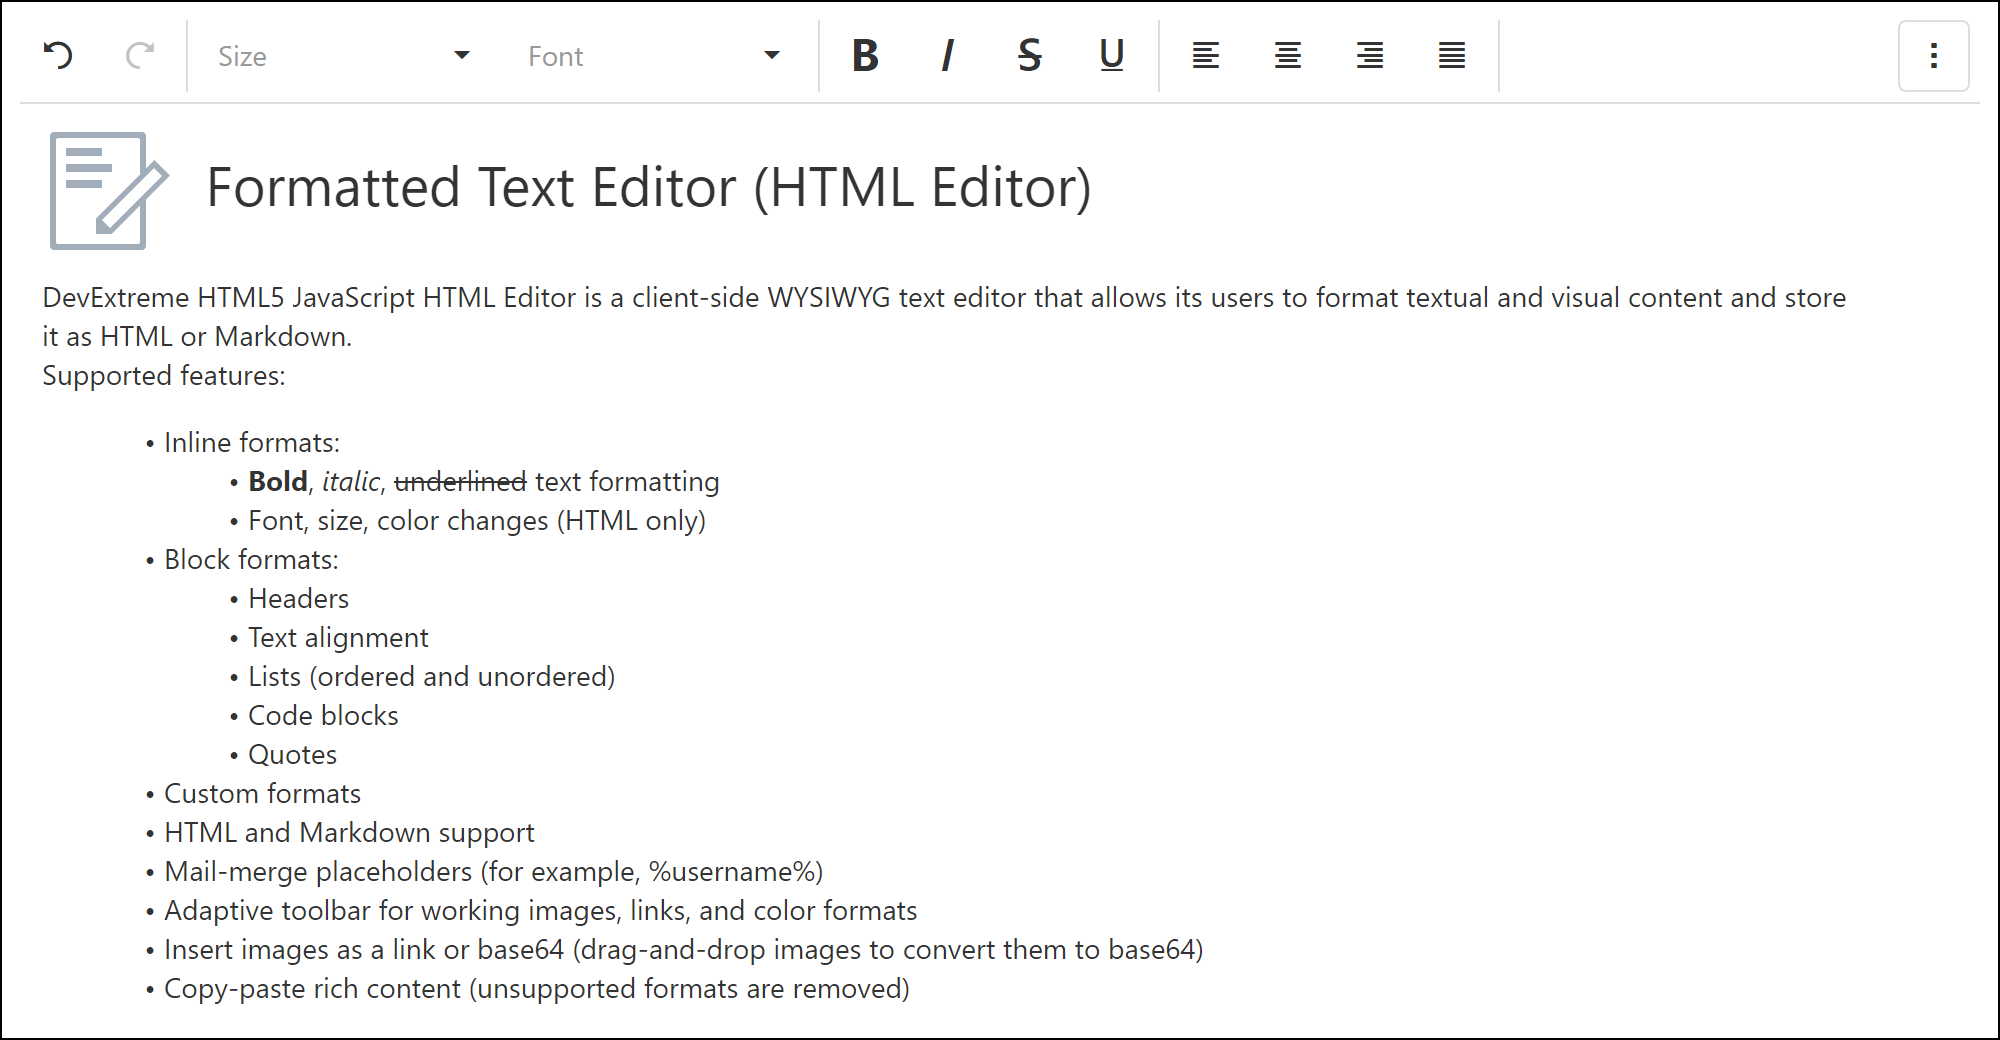 HTML/Markdown WYSIWYG Editor - DevExtreme | DevExpress